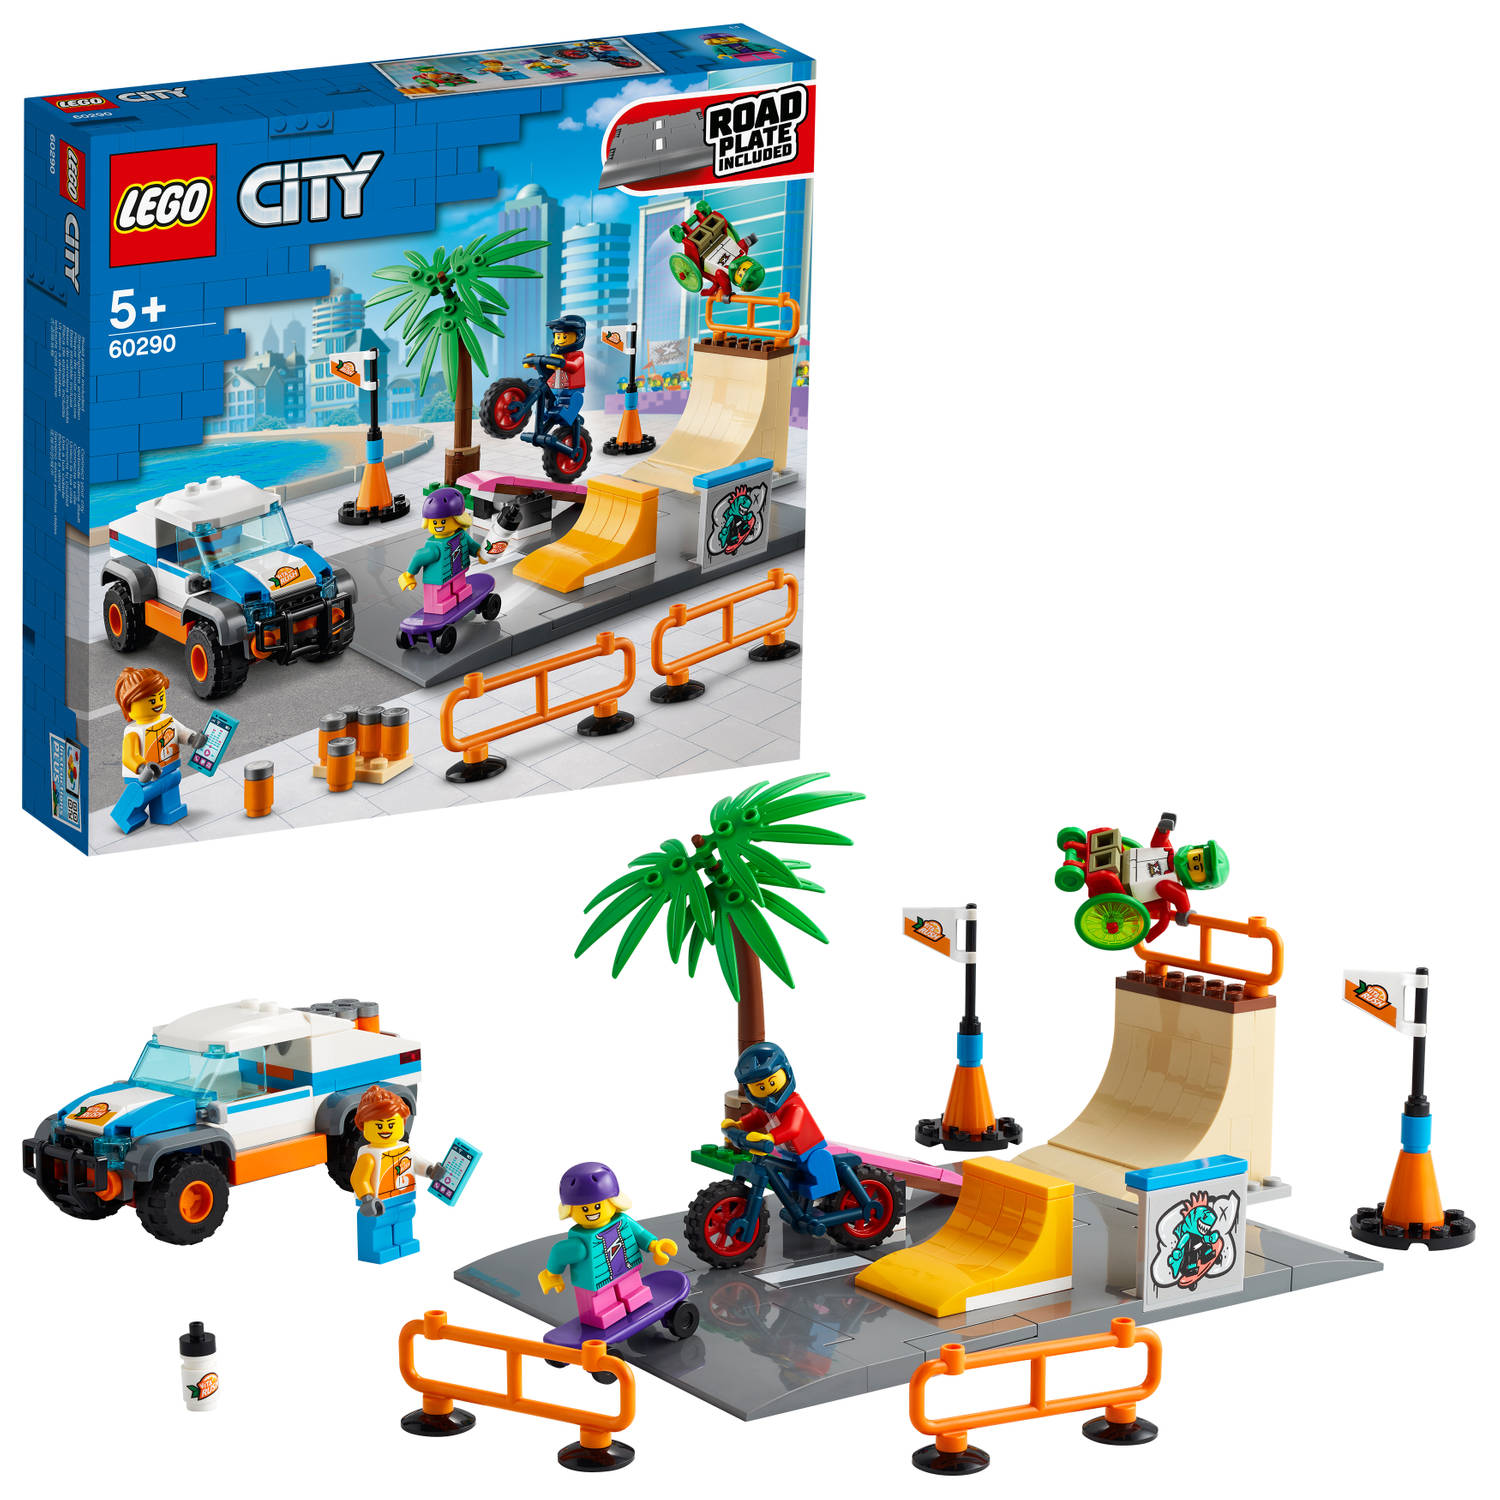 60290 LEGO City Skate Park